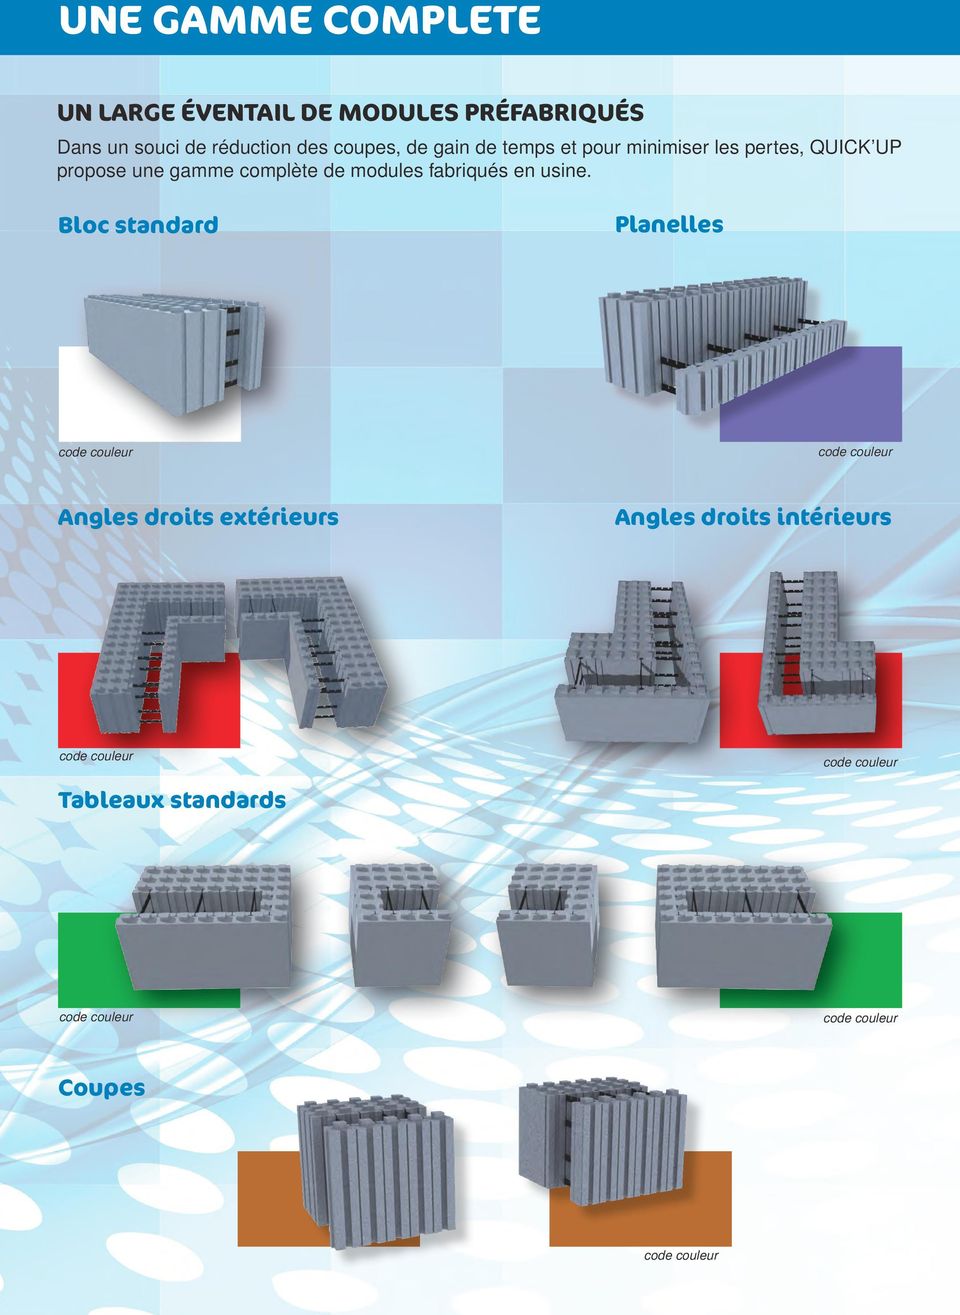 propose une gamme complète de modules fabriqués en usine.